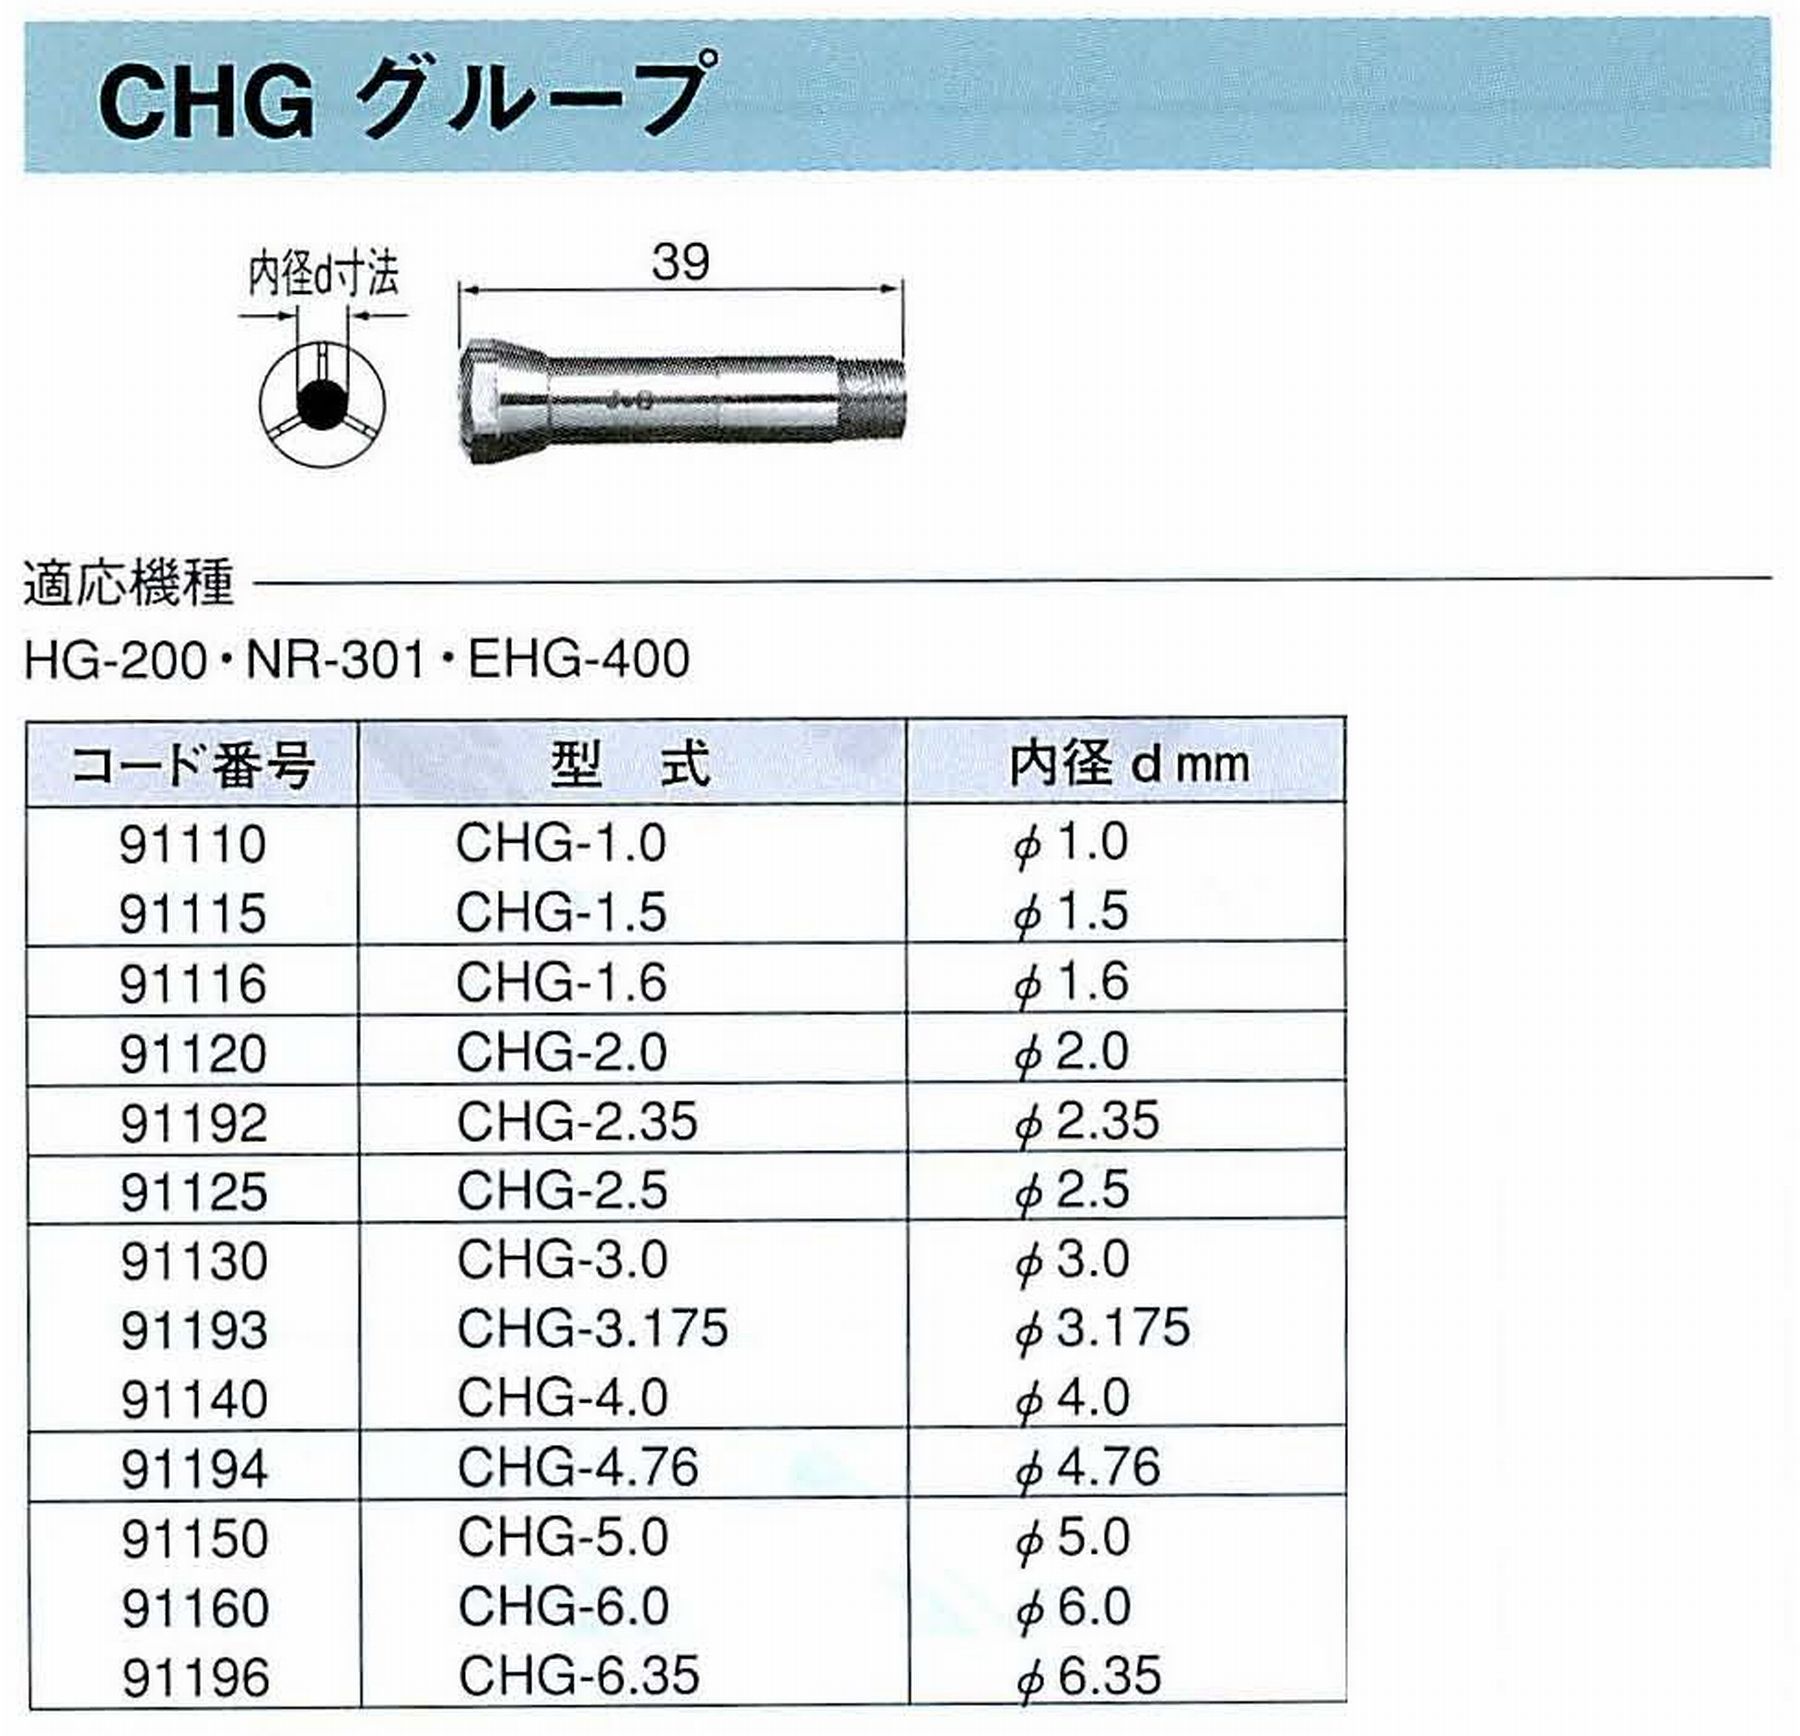 ナカニシ/NAKANISHI コレットチャック コード番号 91150 型式 CHG-5.0 内径:Φ5.0